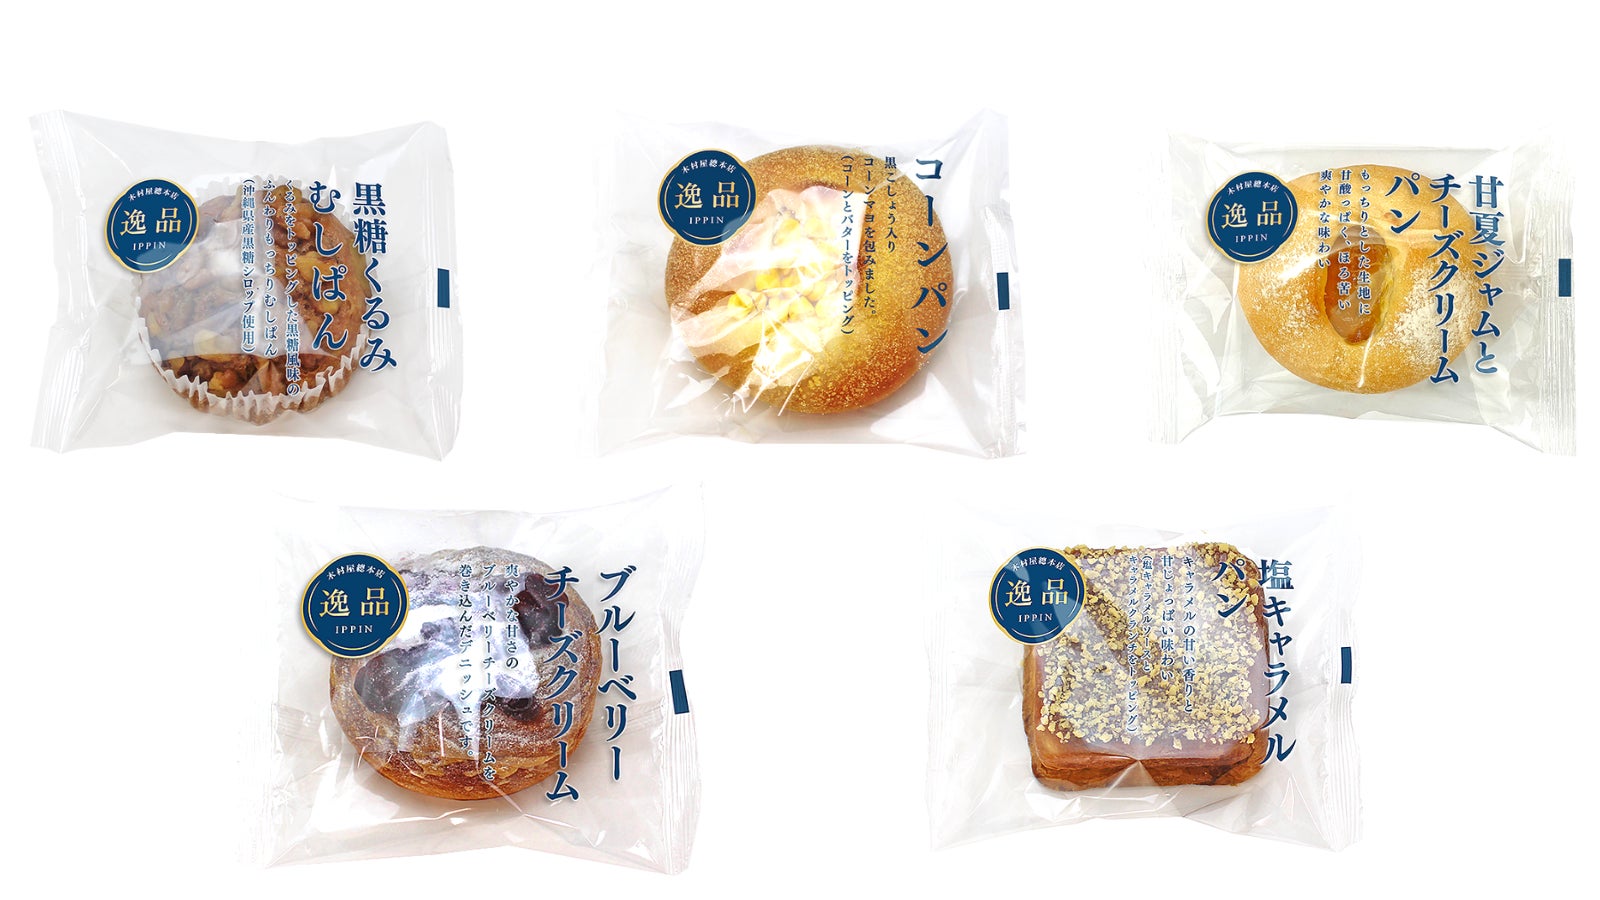 【新発売】沖縄県産黒糖シロップ使用「黒糖くるみむしぱん」が登場！その他「甘夏ジャムとチーズクリームパン」など逸品シリーズから新商品5種類を関東近郊のスーパーで2023年6月1日発売